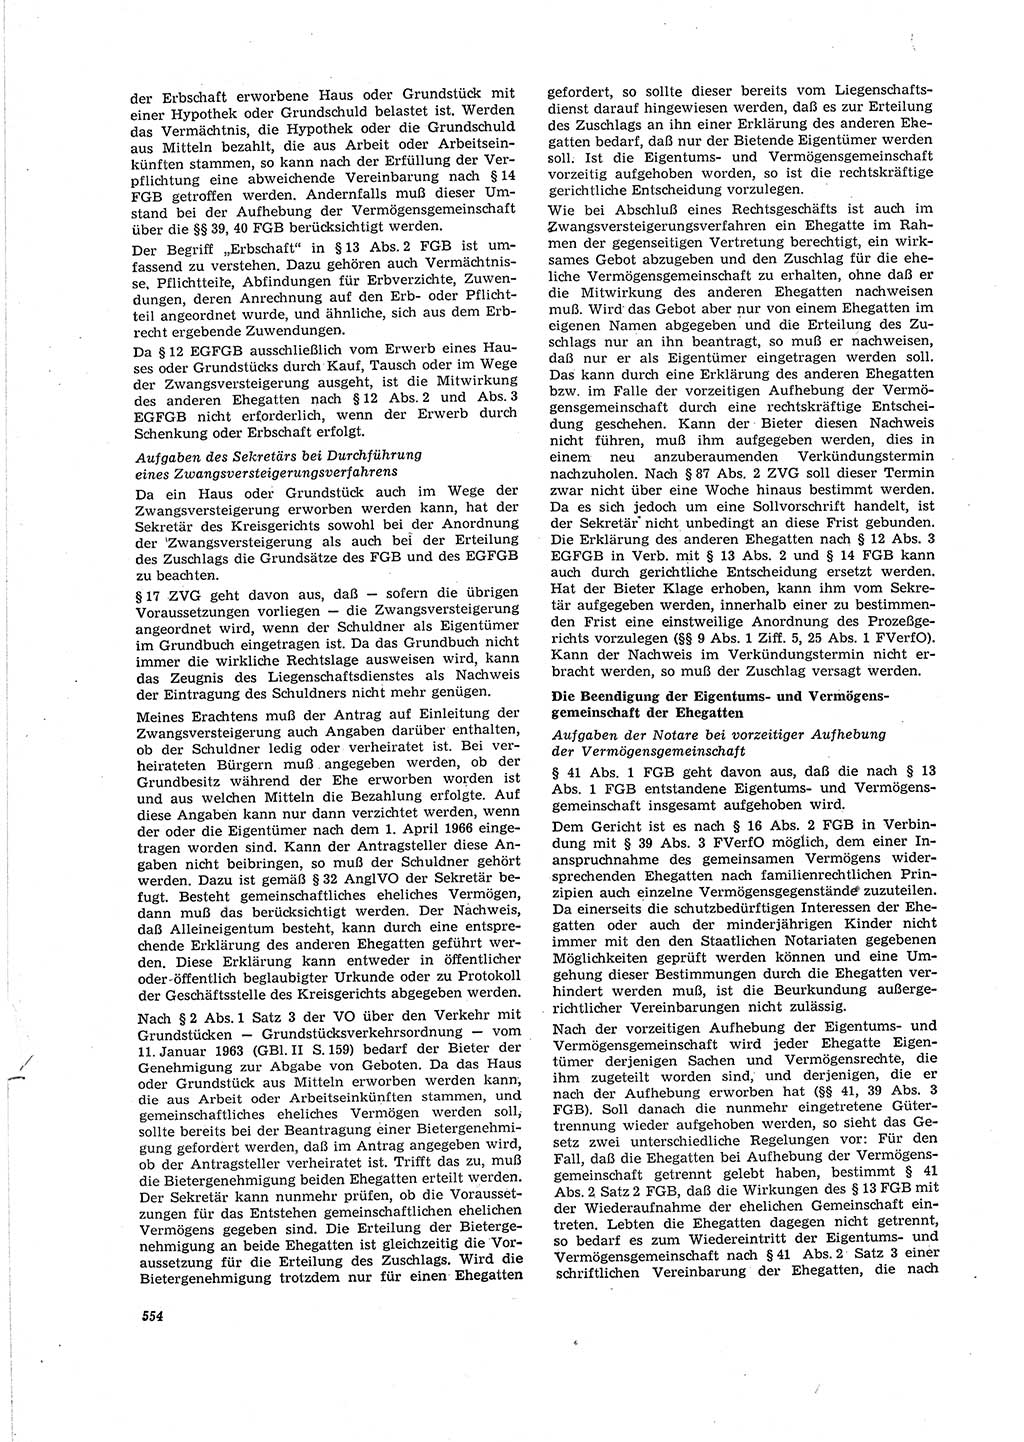 Neue Justiz (NJ), Zeitschrift für Recht und Rechtswissenschaft [Deutsche Demokratische Republik (DDR)], 20. Jahrgang 1966, Seite 554 (NJ DDR 1966, S. 554)